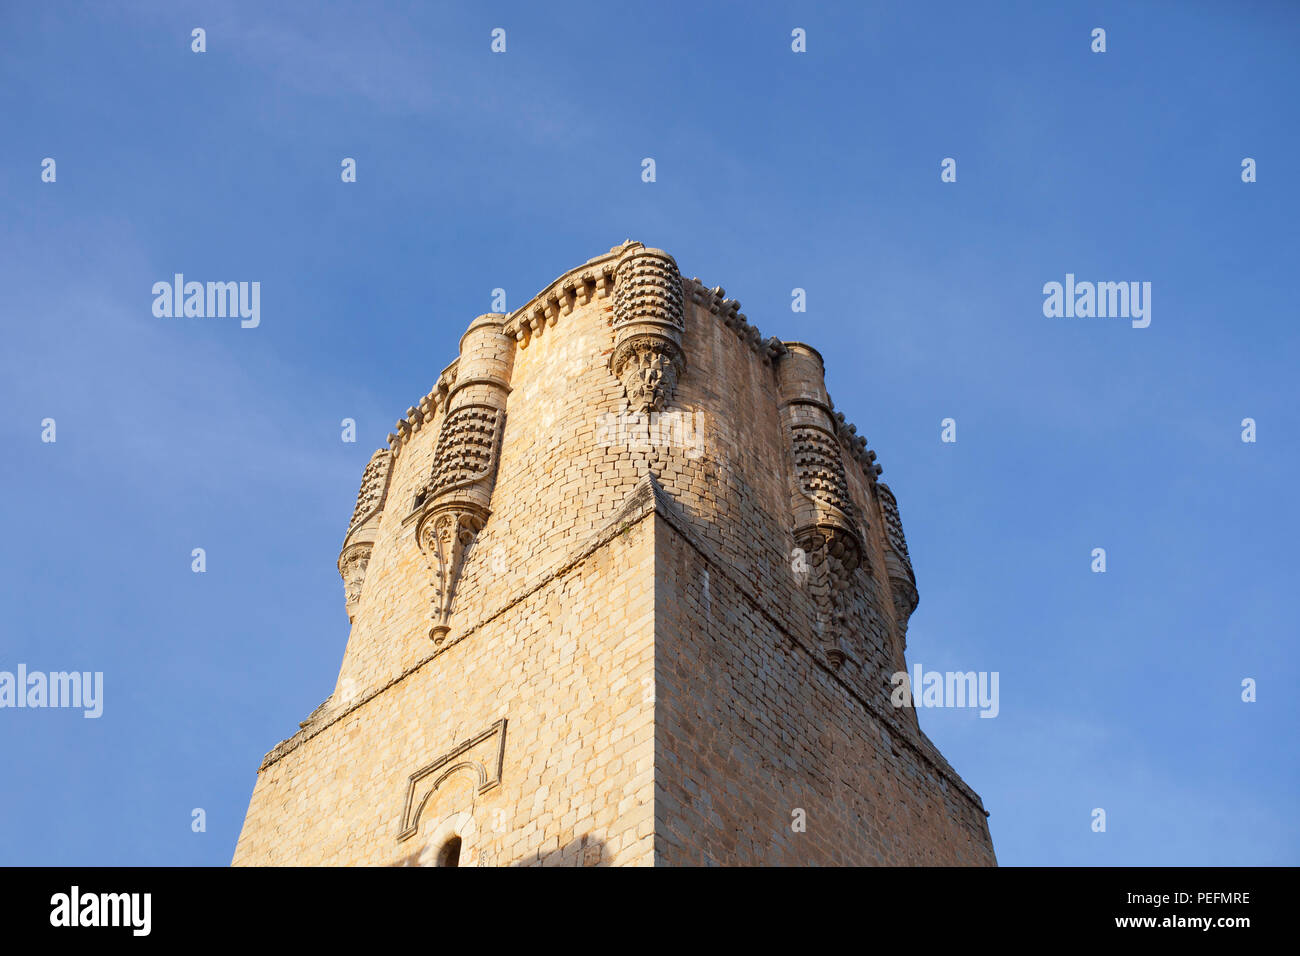 Beeindruckende Belalcazar Schloss, mit der höchsten halten Turm der Iberischen Halbinsel, Córdoba, Spanien Stockfoto